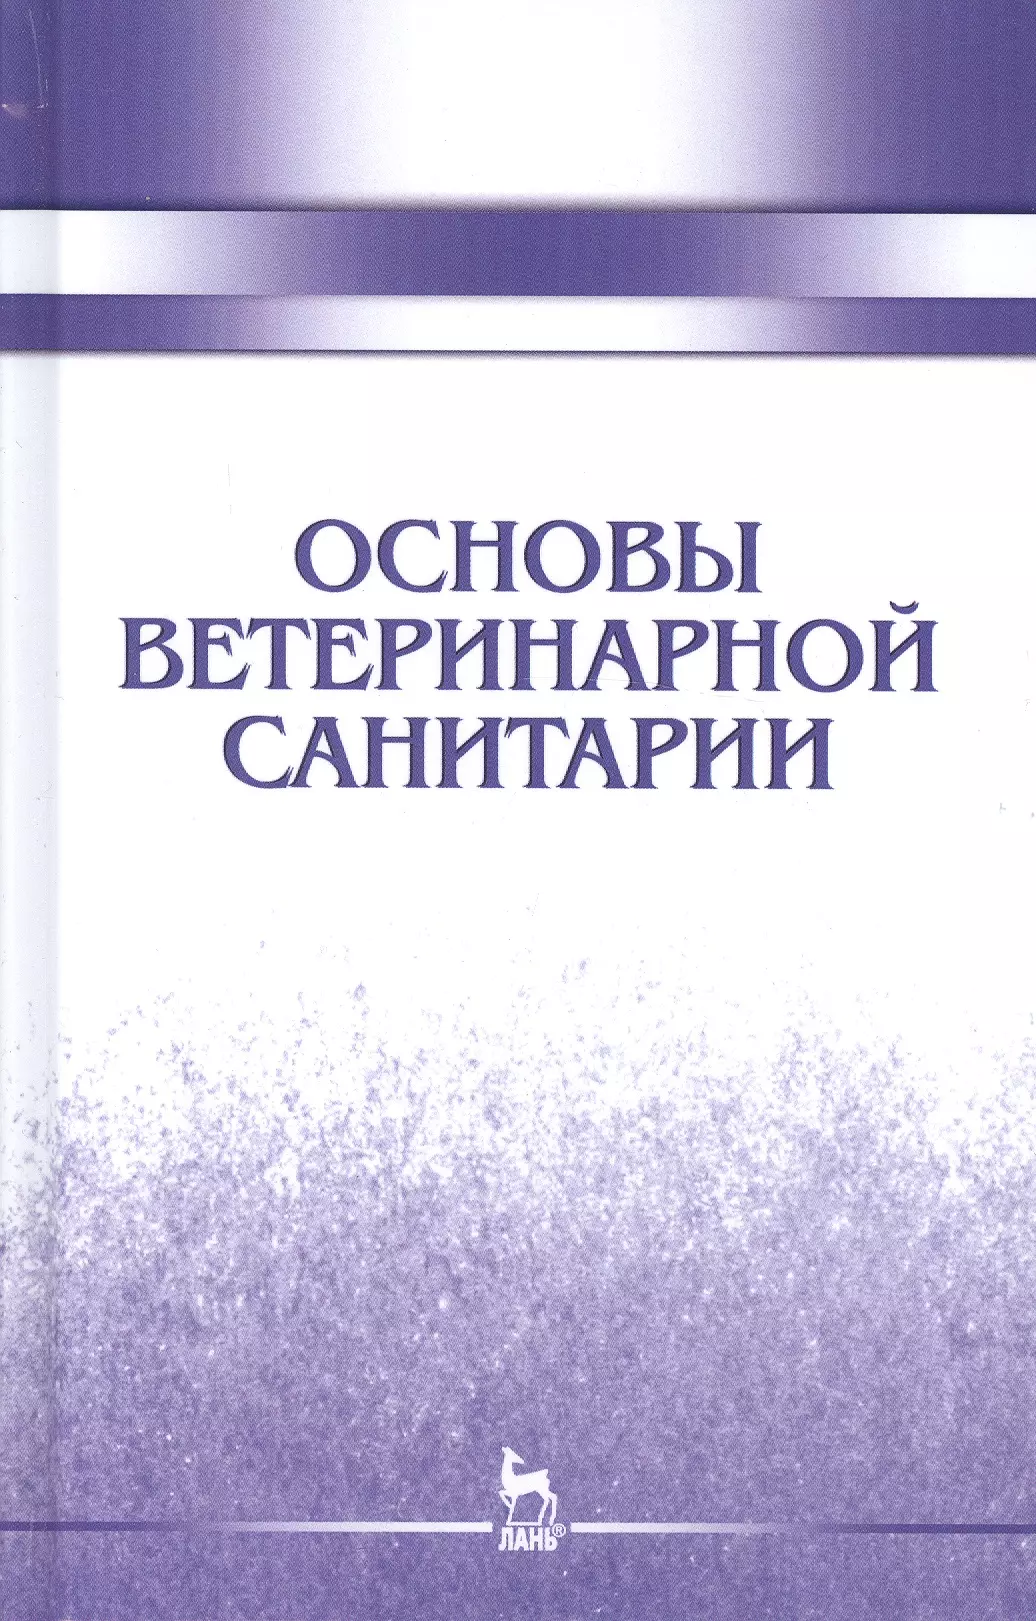 Сахно Николай Владимирович - Основы ветеринарной санитарии: Уч.пособие, 1-е изд.